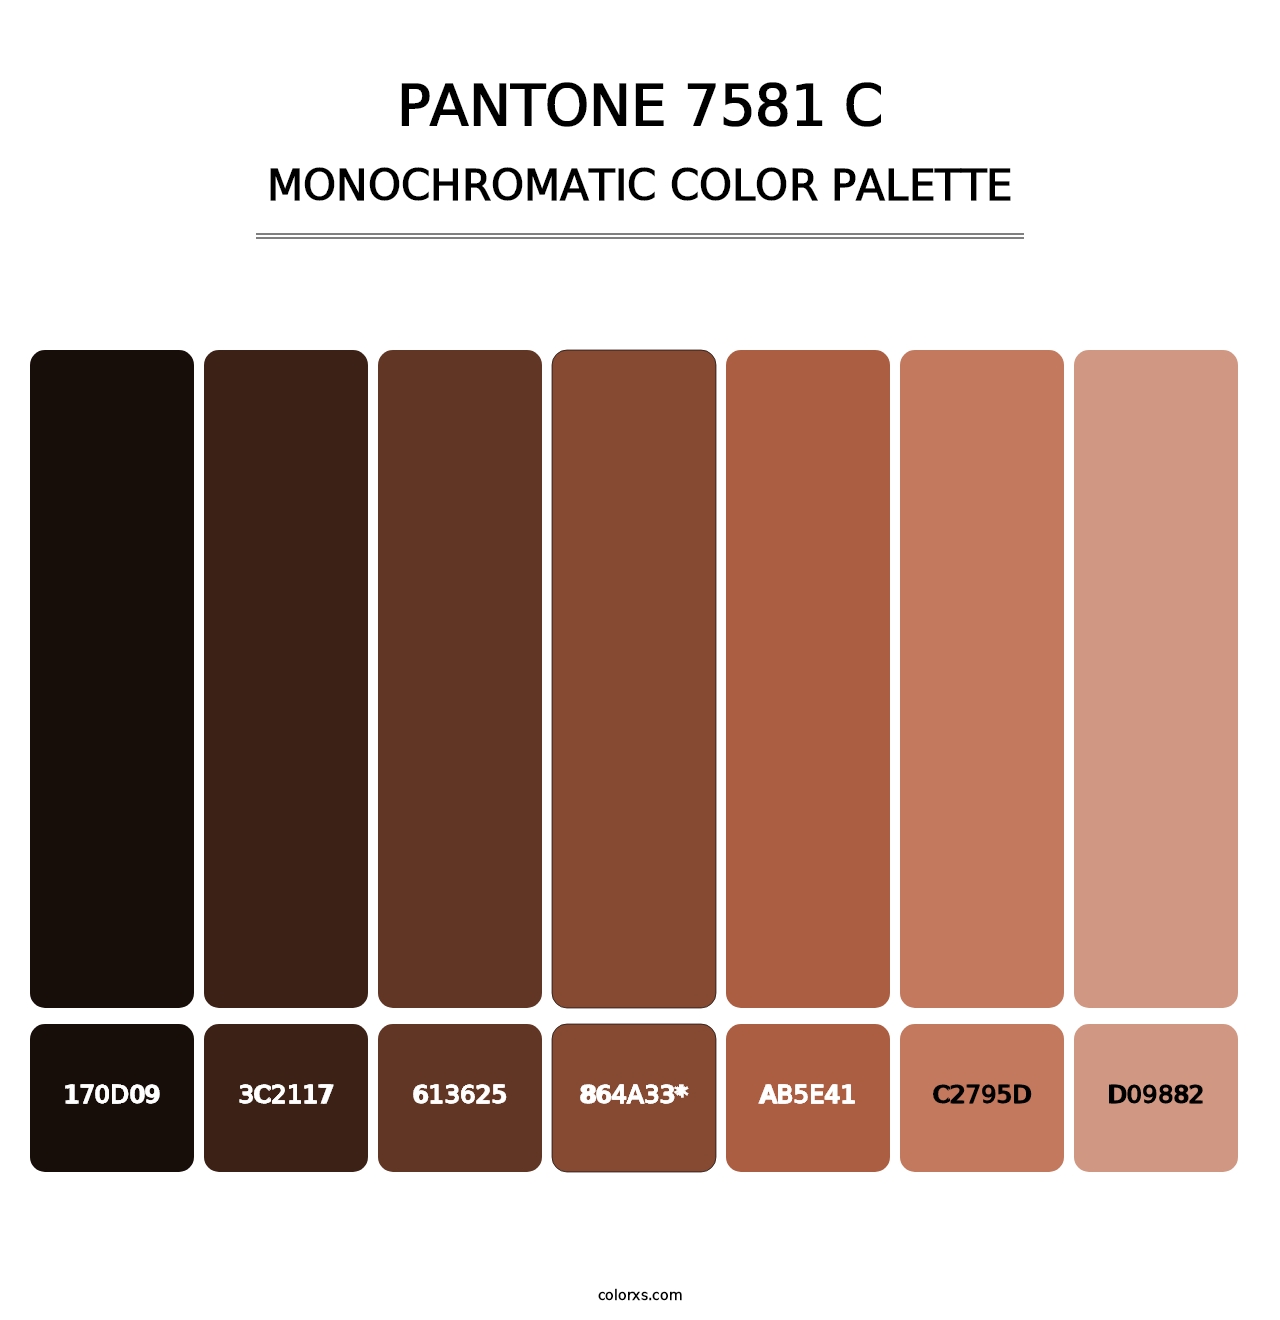 PANTONE 7581 C - Monochromatic Color Palette